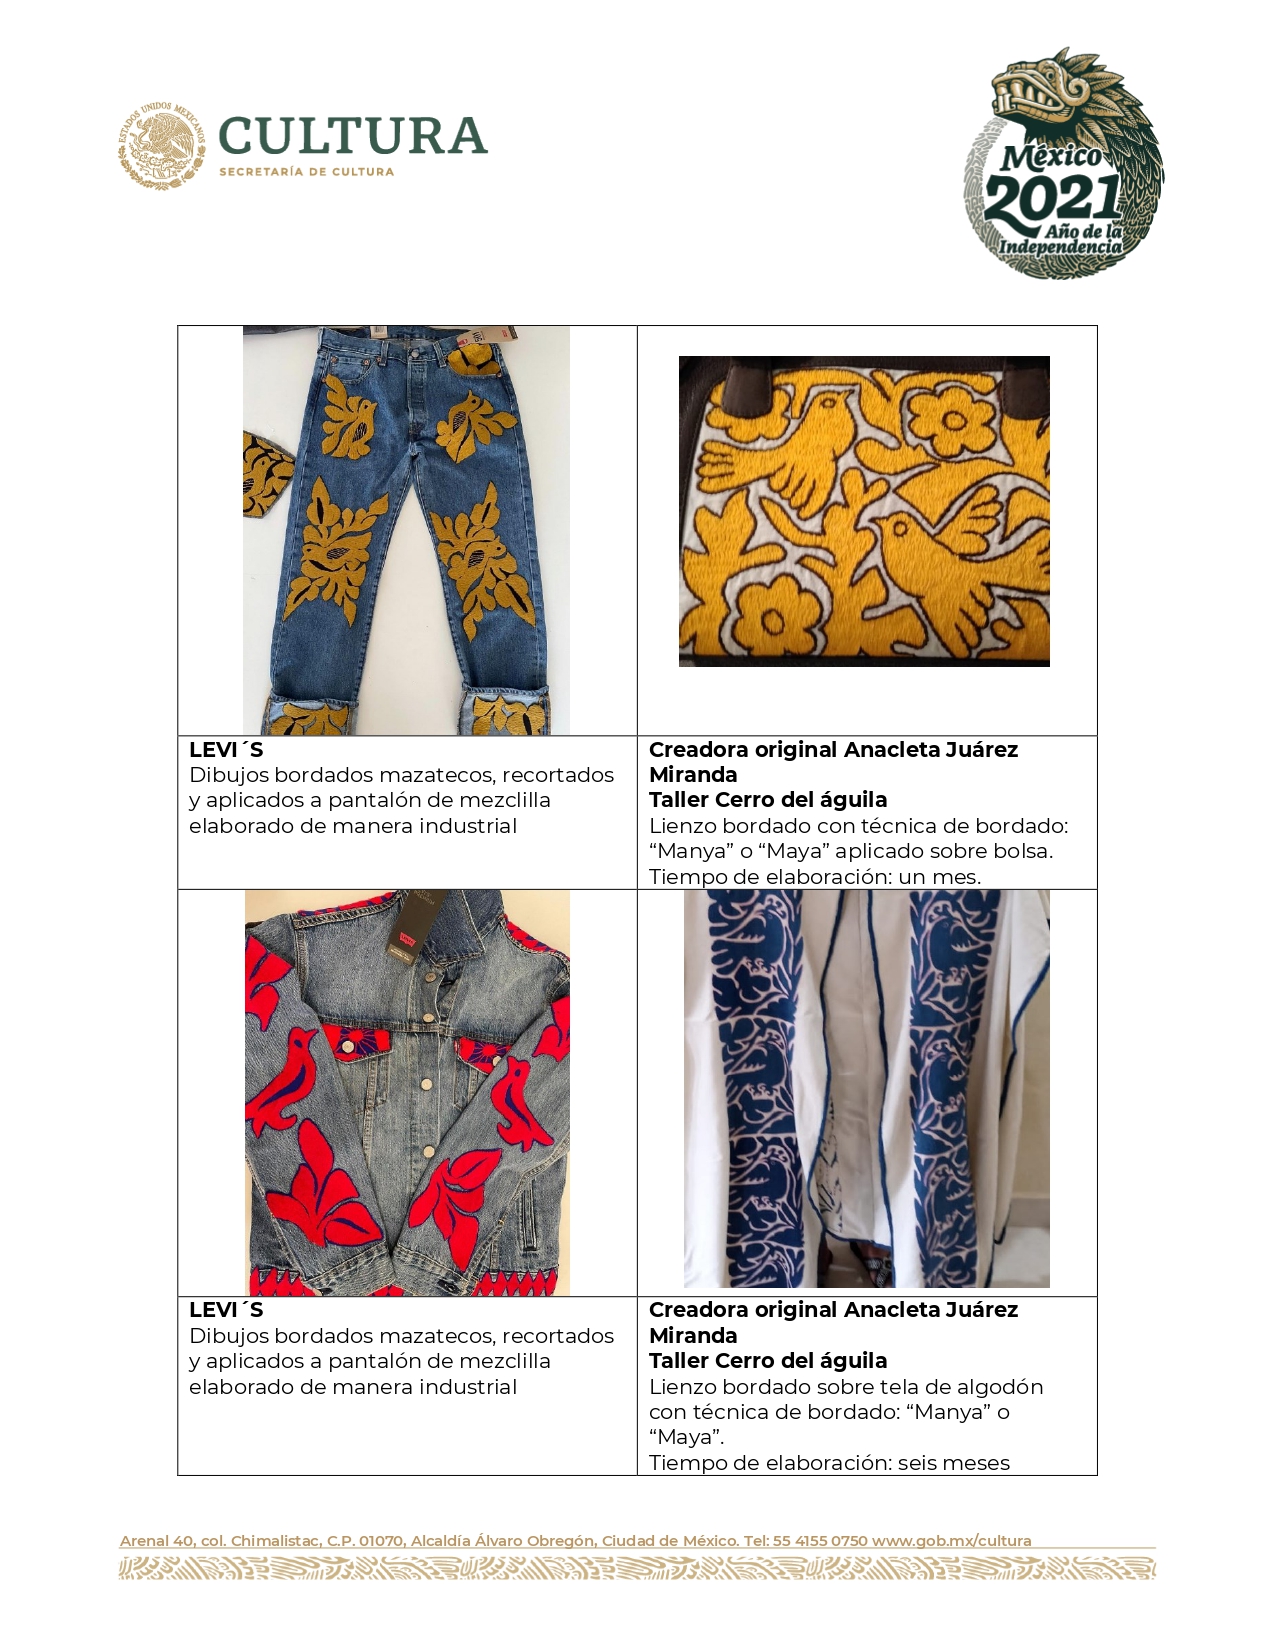 Secretaría de Cultura cuestiona a Levi's y Draco Textil por usar bordados de comunidades oaxaqueñas